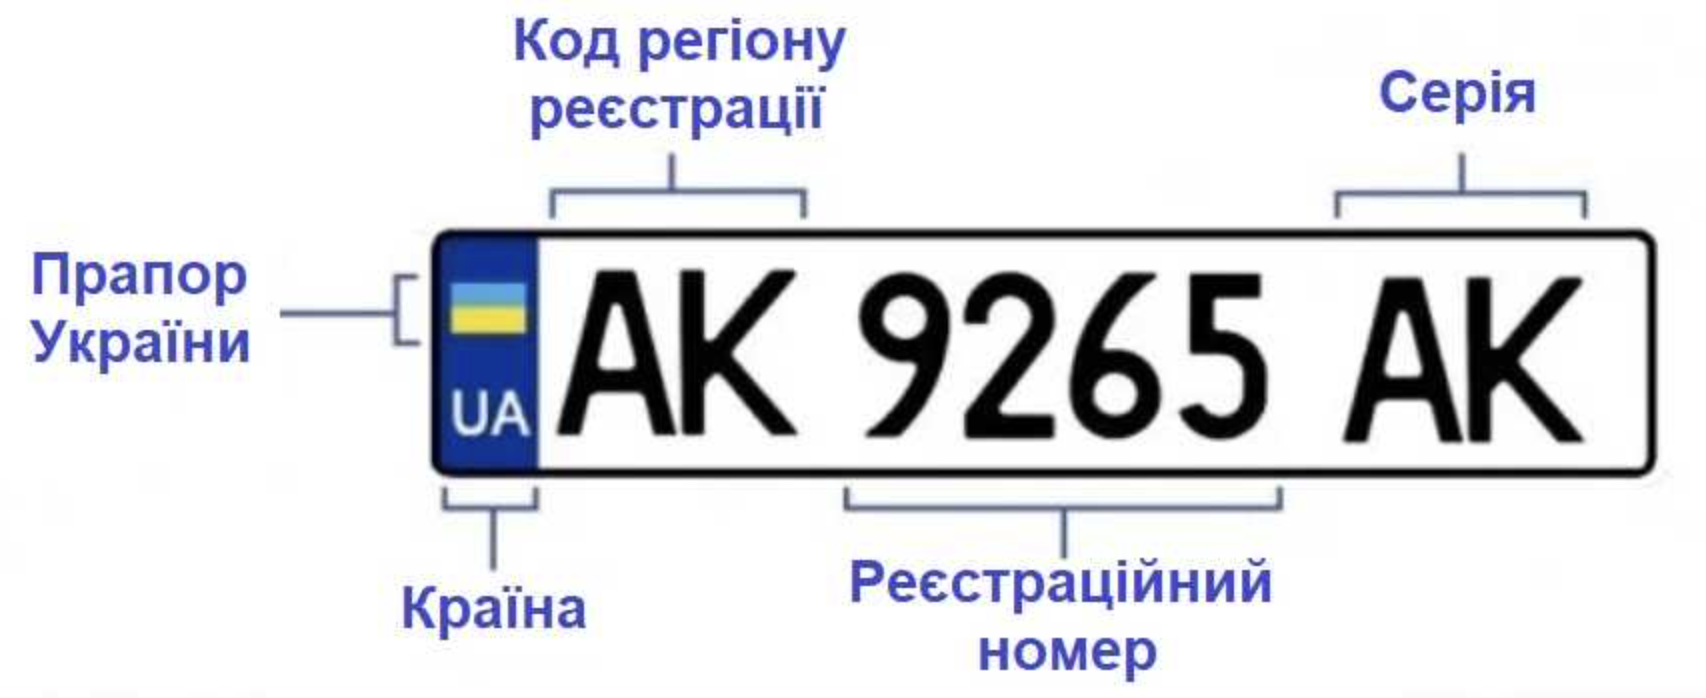 Номера украина какая область. Обозначение автомобильных номеров Украины. Номерные знаки регионов Украины. Автомобильные номера Украины по регионам расшифровка. Номера Украины автомобильные.